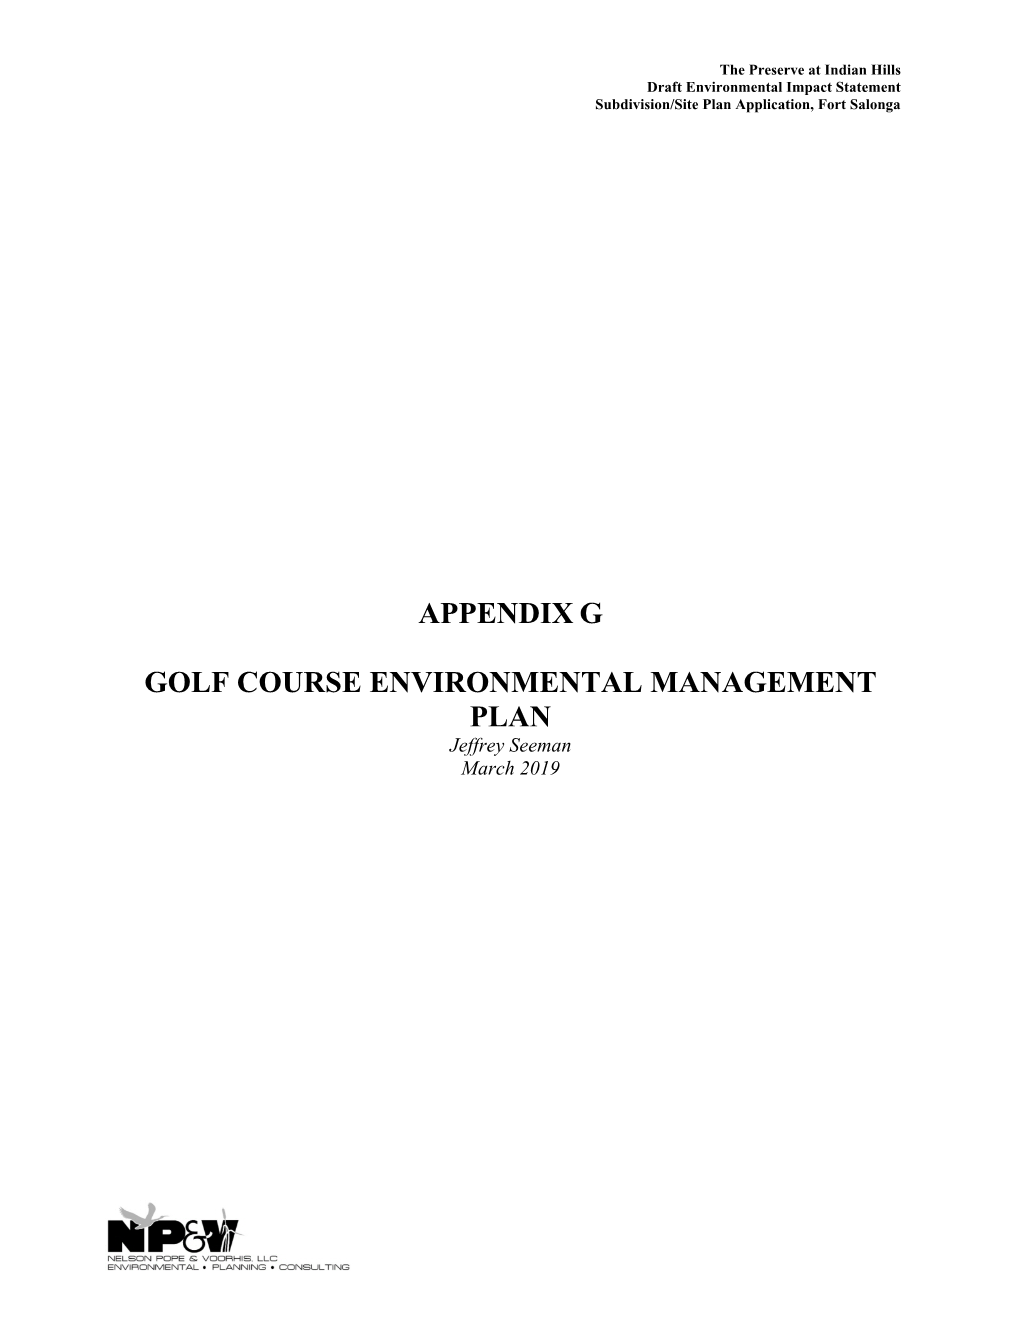 Appendix G Golf Course Environmental Management